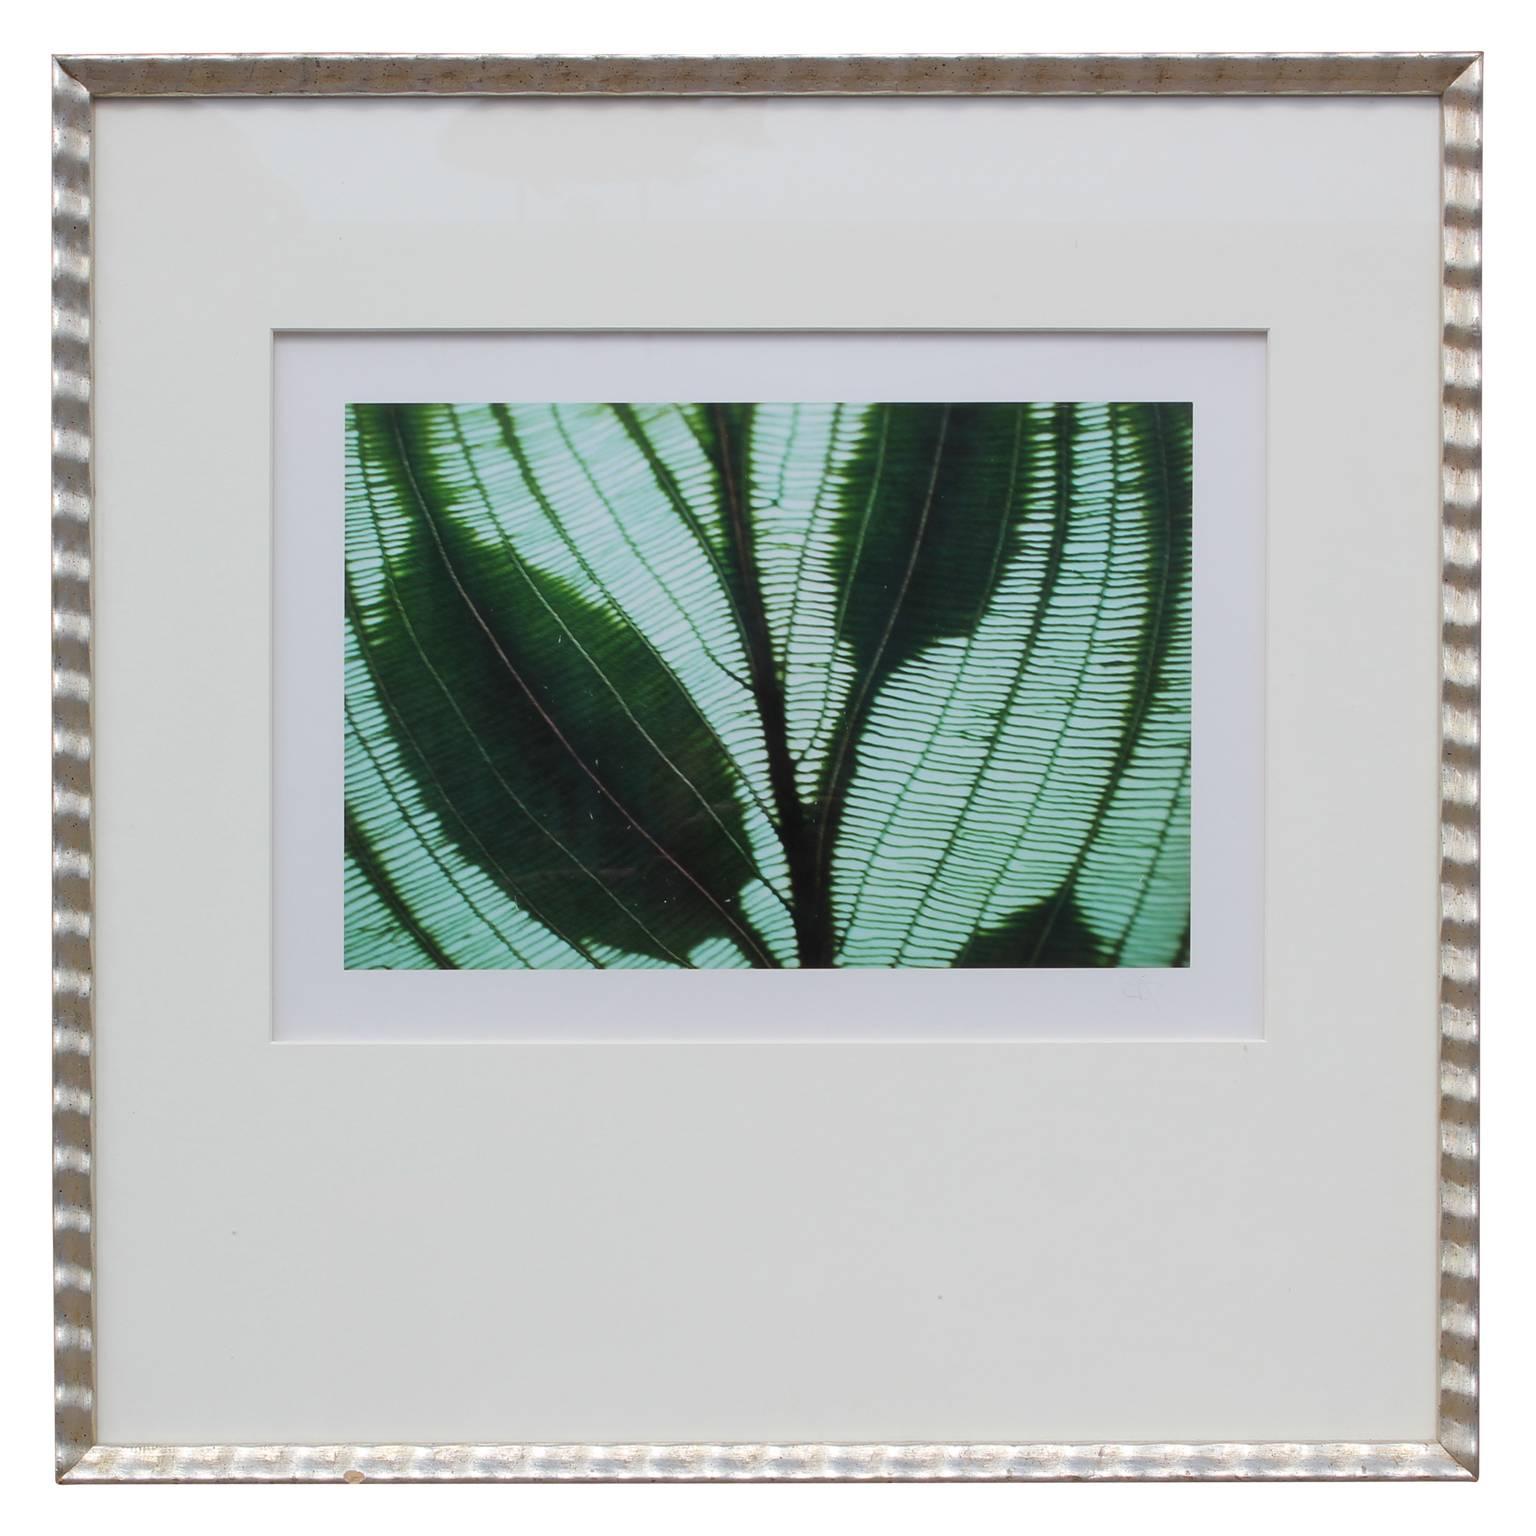 Botanisches Foto von durchscheinenden Blättern in der Sonne von Jim Laser, gerahmt und fotografiert 1998. Gerahmt in einem weißen Passepartout und einem dekorativen Rahmen. Etikett mit Künstlerinformationen auf der Rückseite.

Biografie des